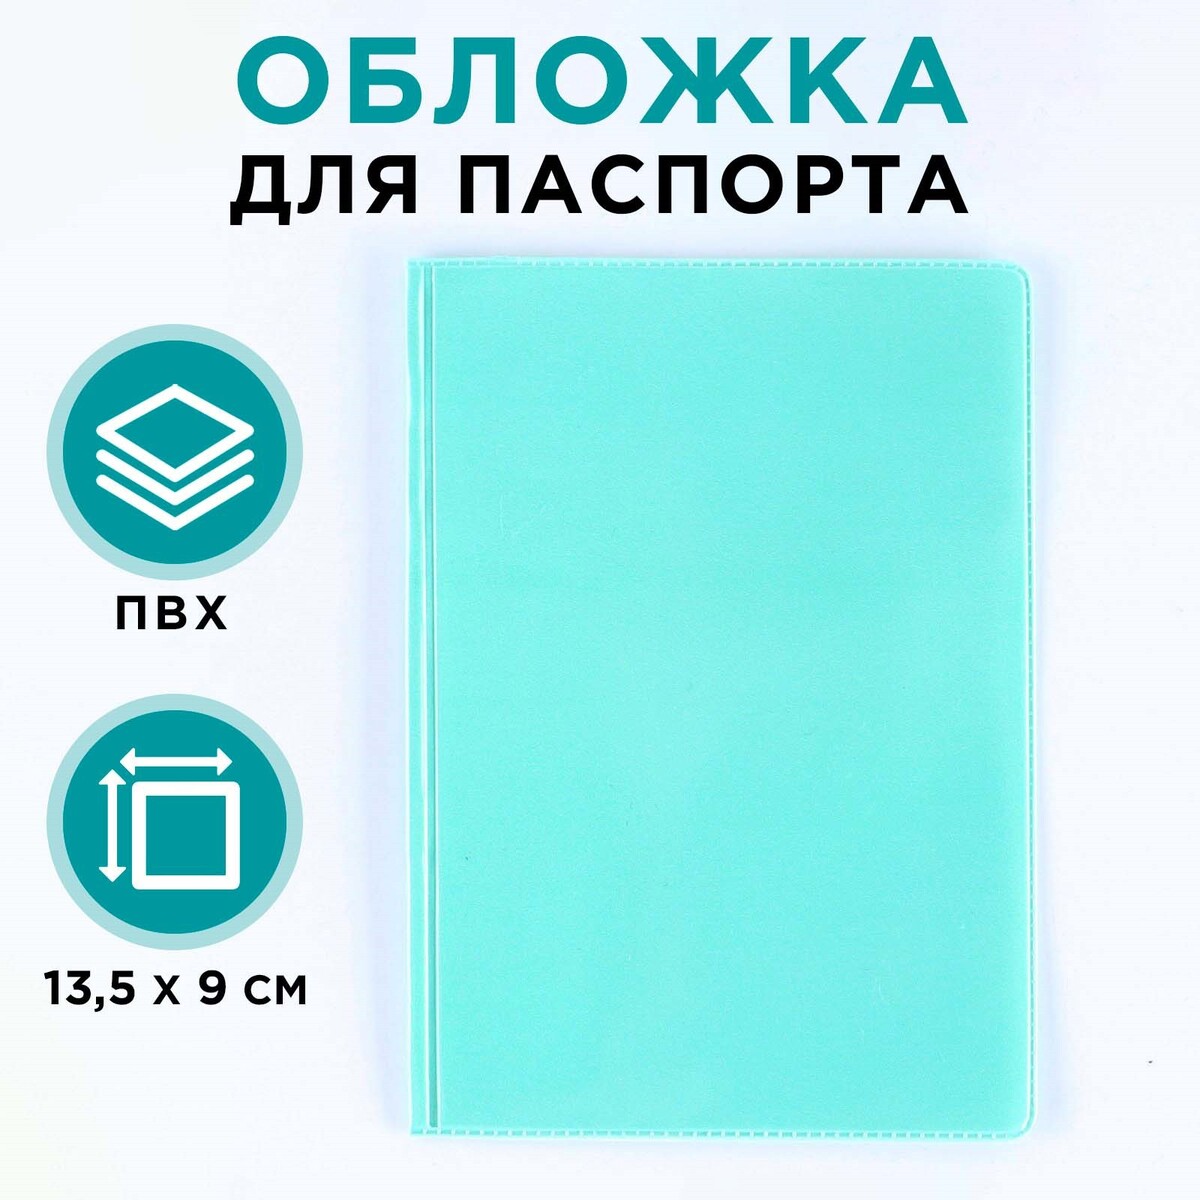 Обложка для паспорта, пвх, цвет бирюзовый обложка для паспорта бирюзовый